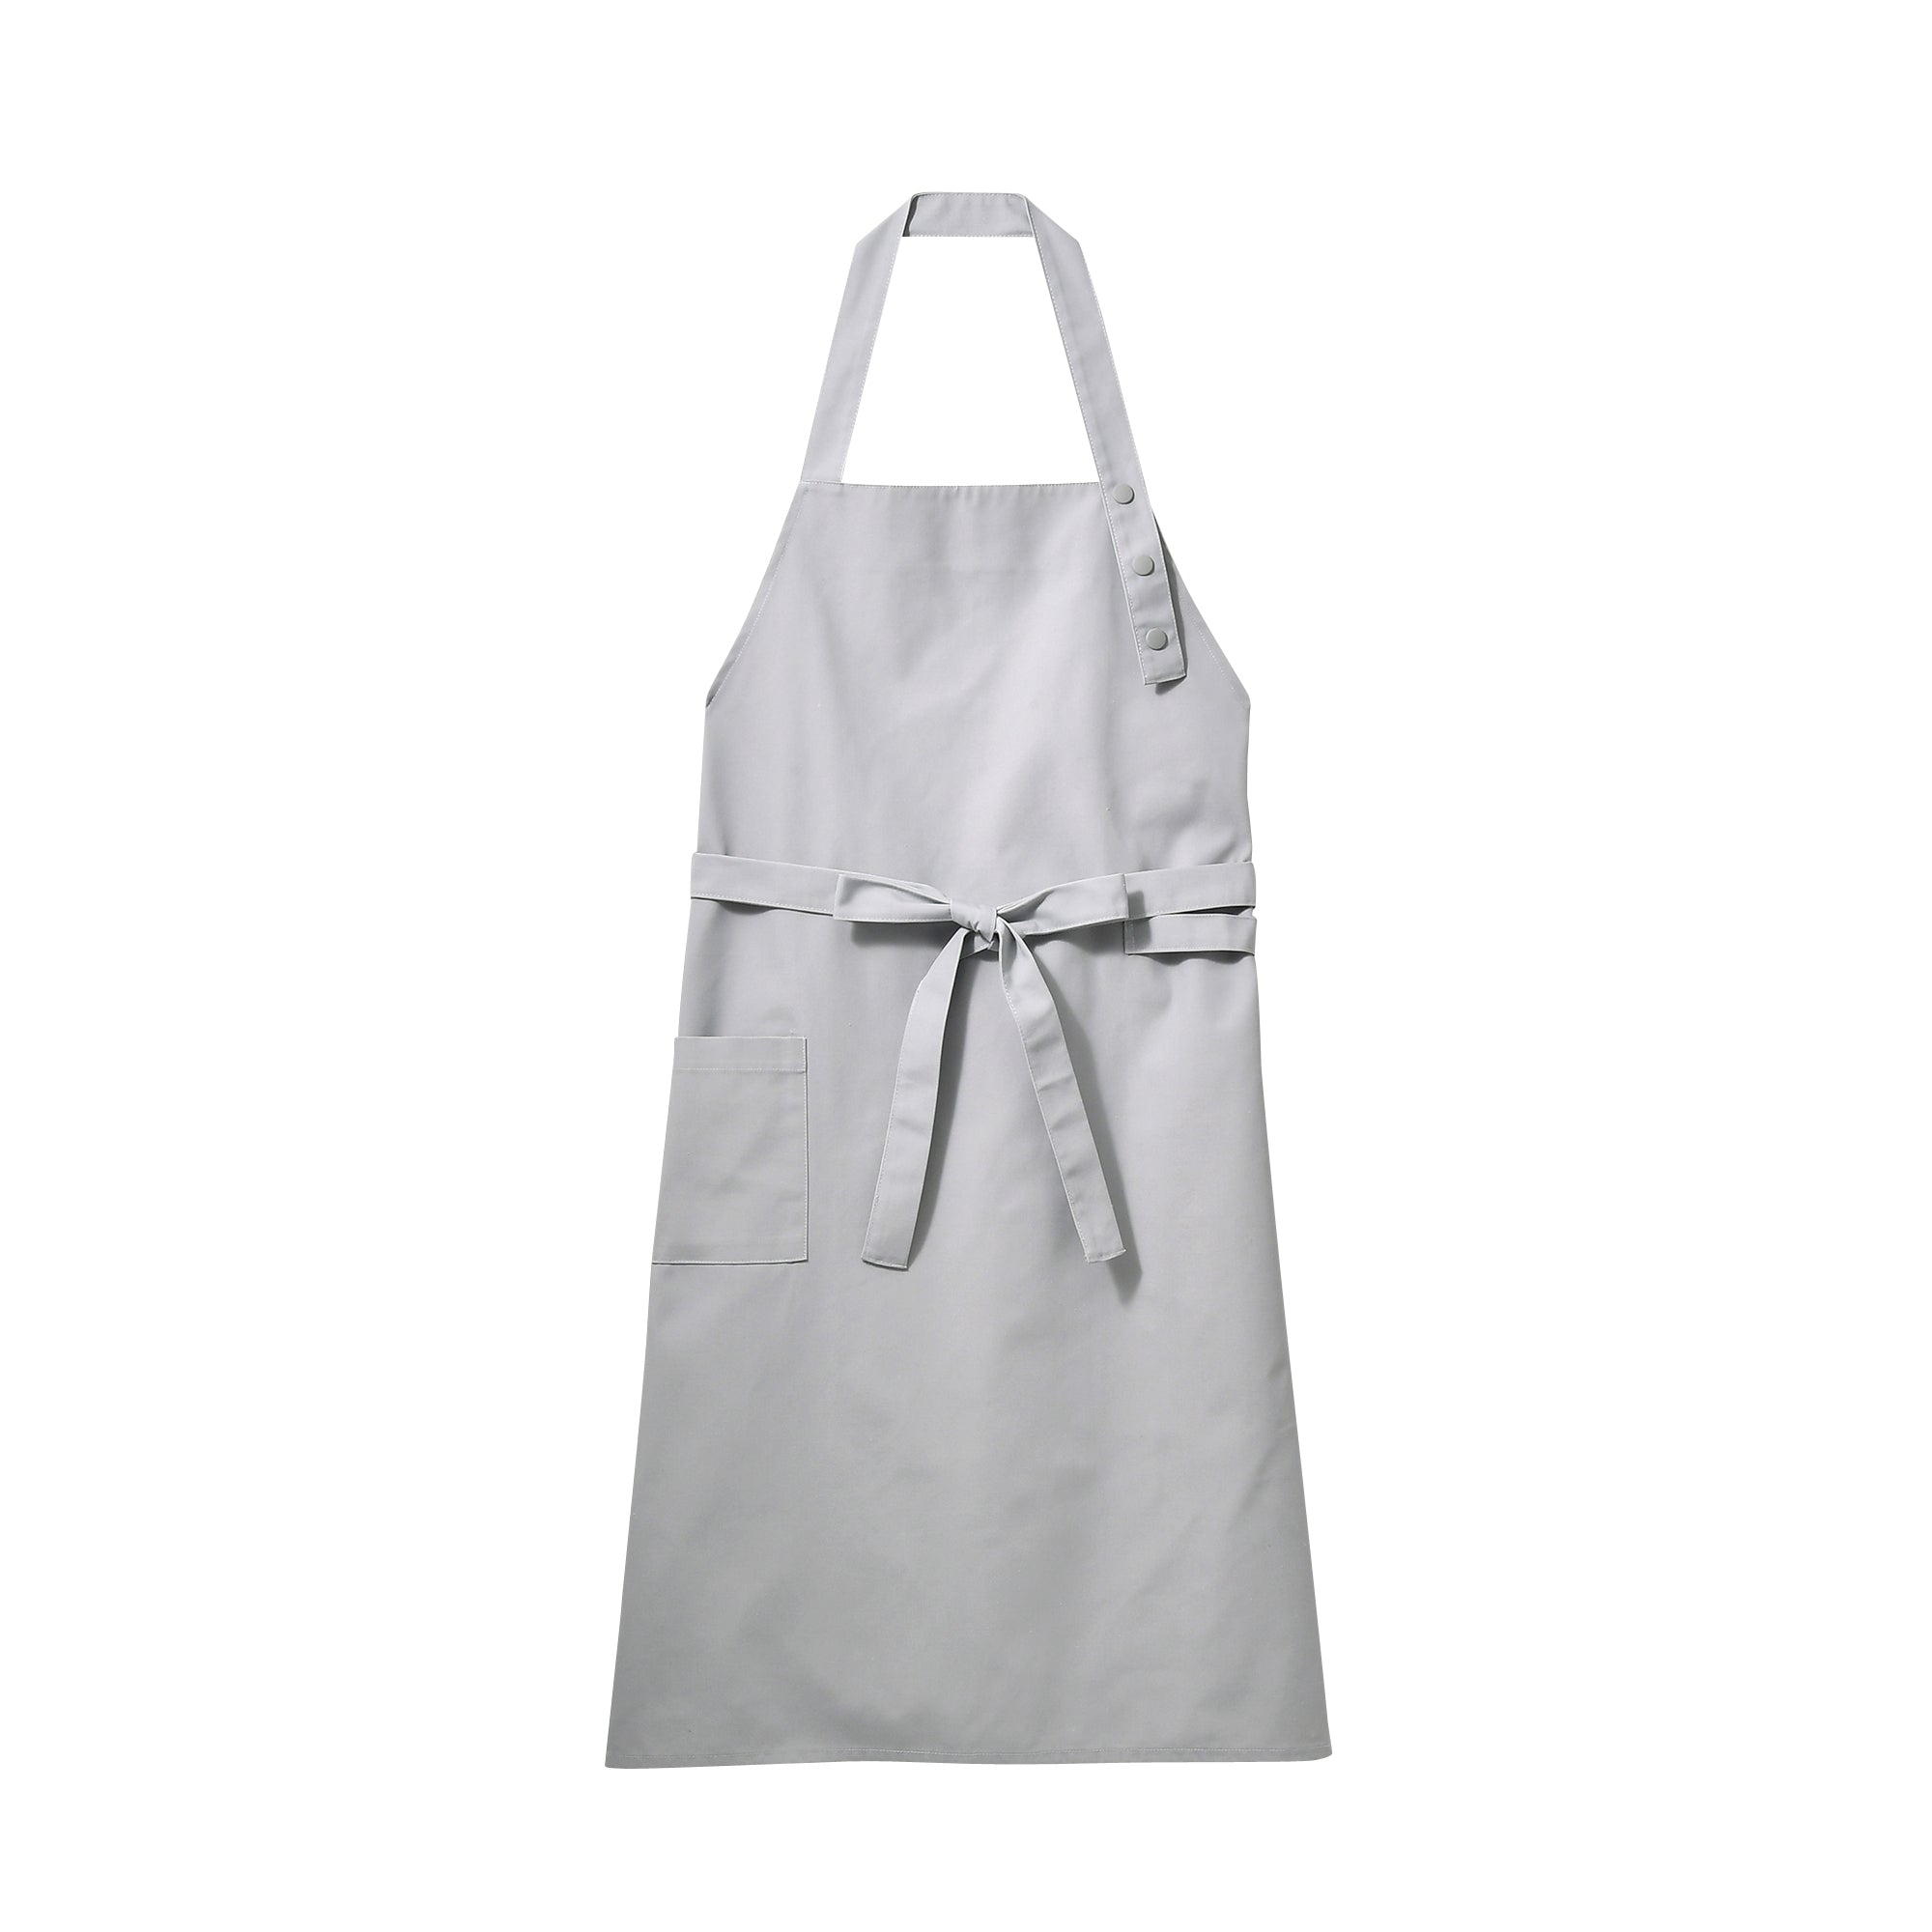 SALEセール Ambesonneキッチンエプロンマルチカラー印刷 Standard Size apron_29493 ガーデニングウェア 